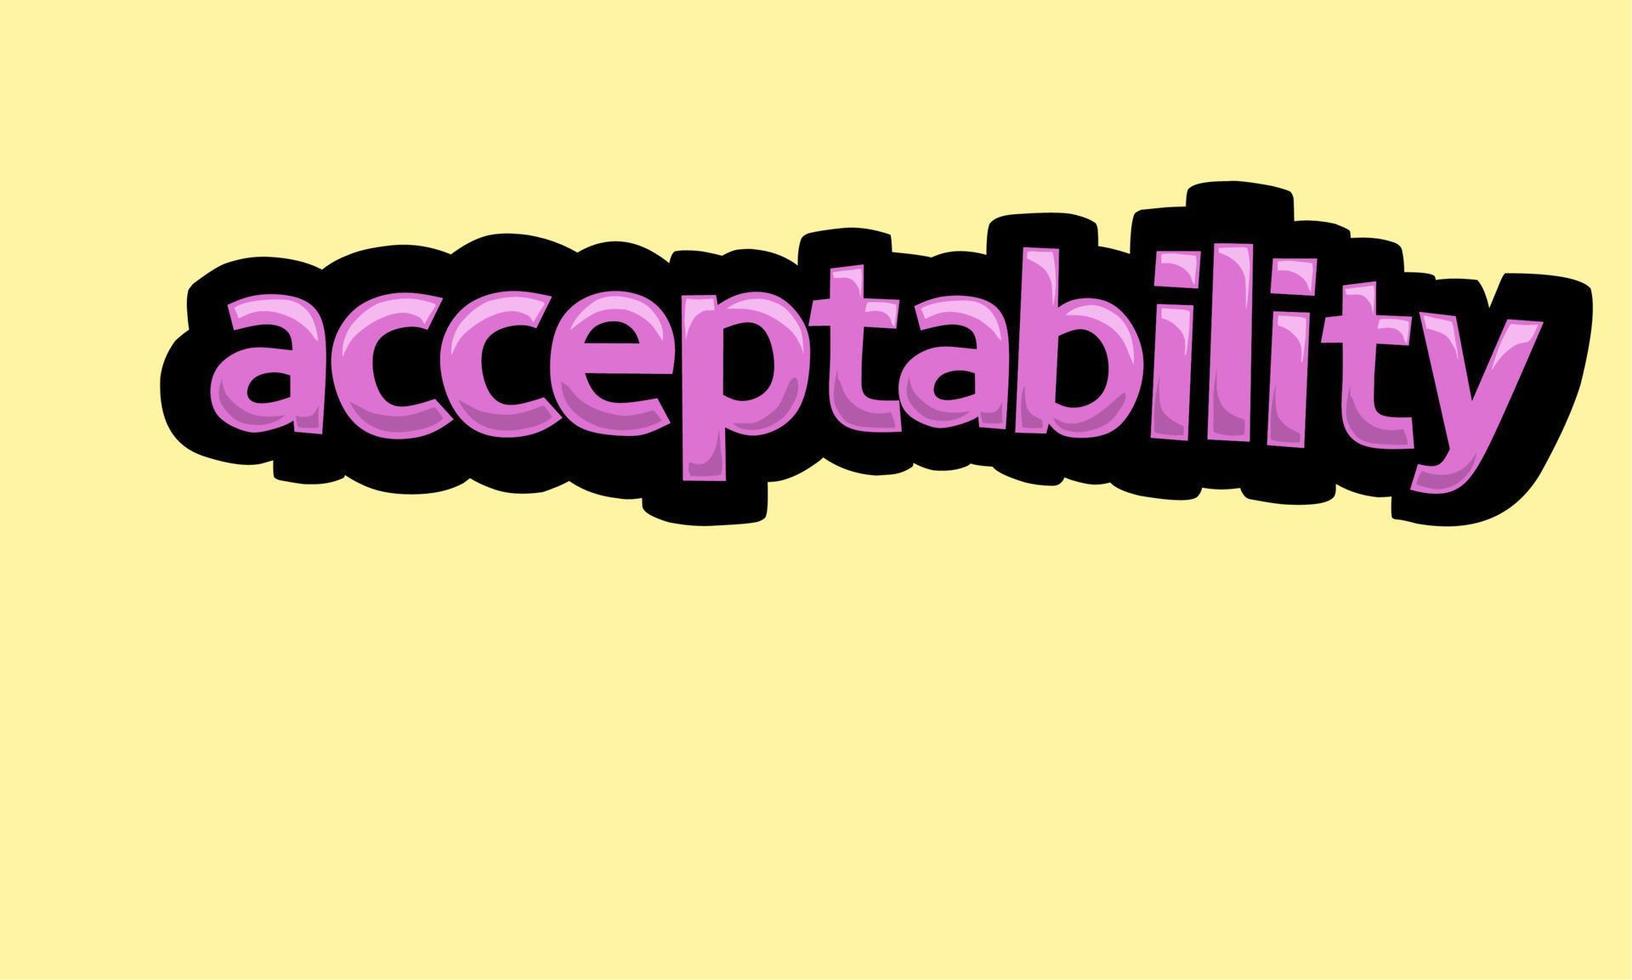 conception de vecteur d'écriture d'acceptabilité sur fond jaune